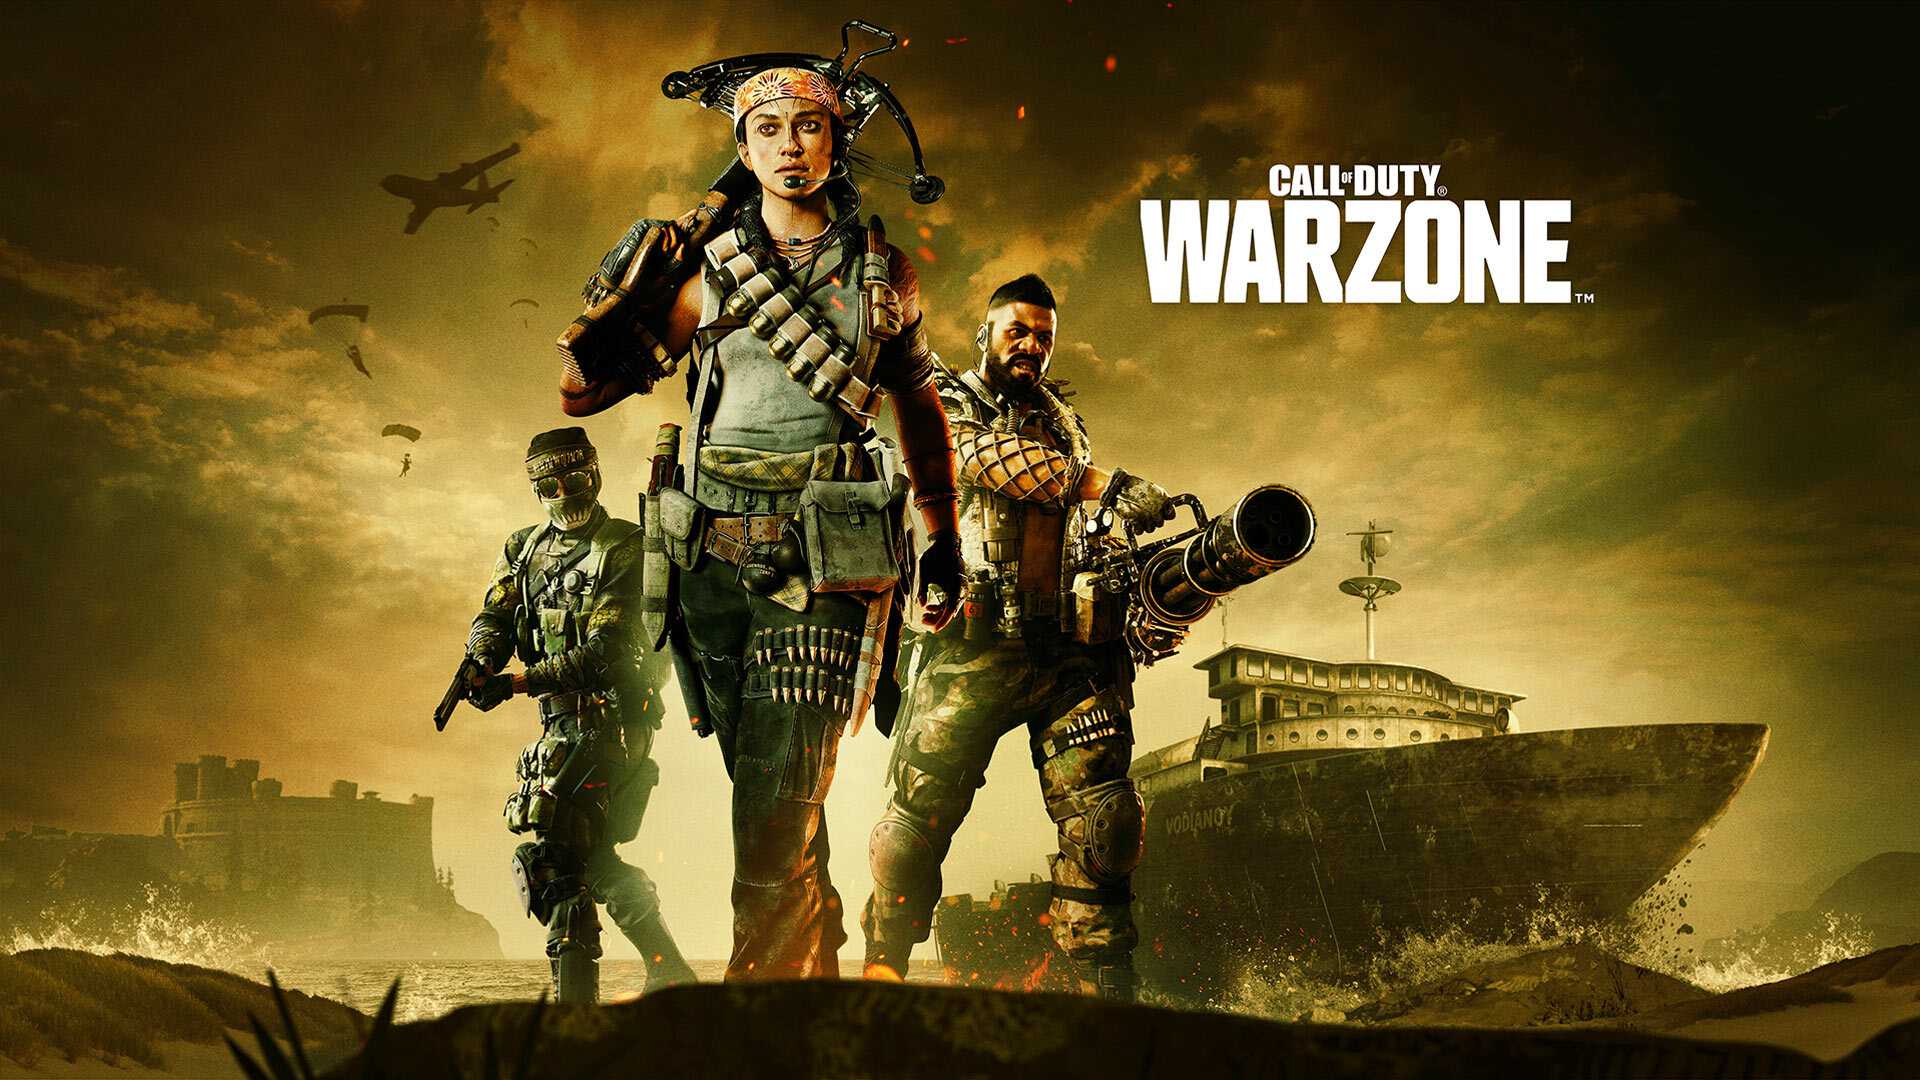 Après Ban-Wave Activision, le pirate sort de Call of Duty Warzone et de Black Ops Cold War en direct en streaming